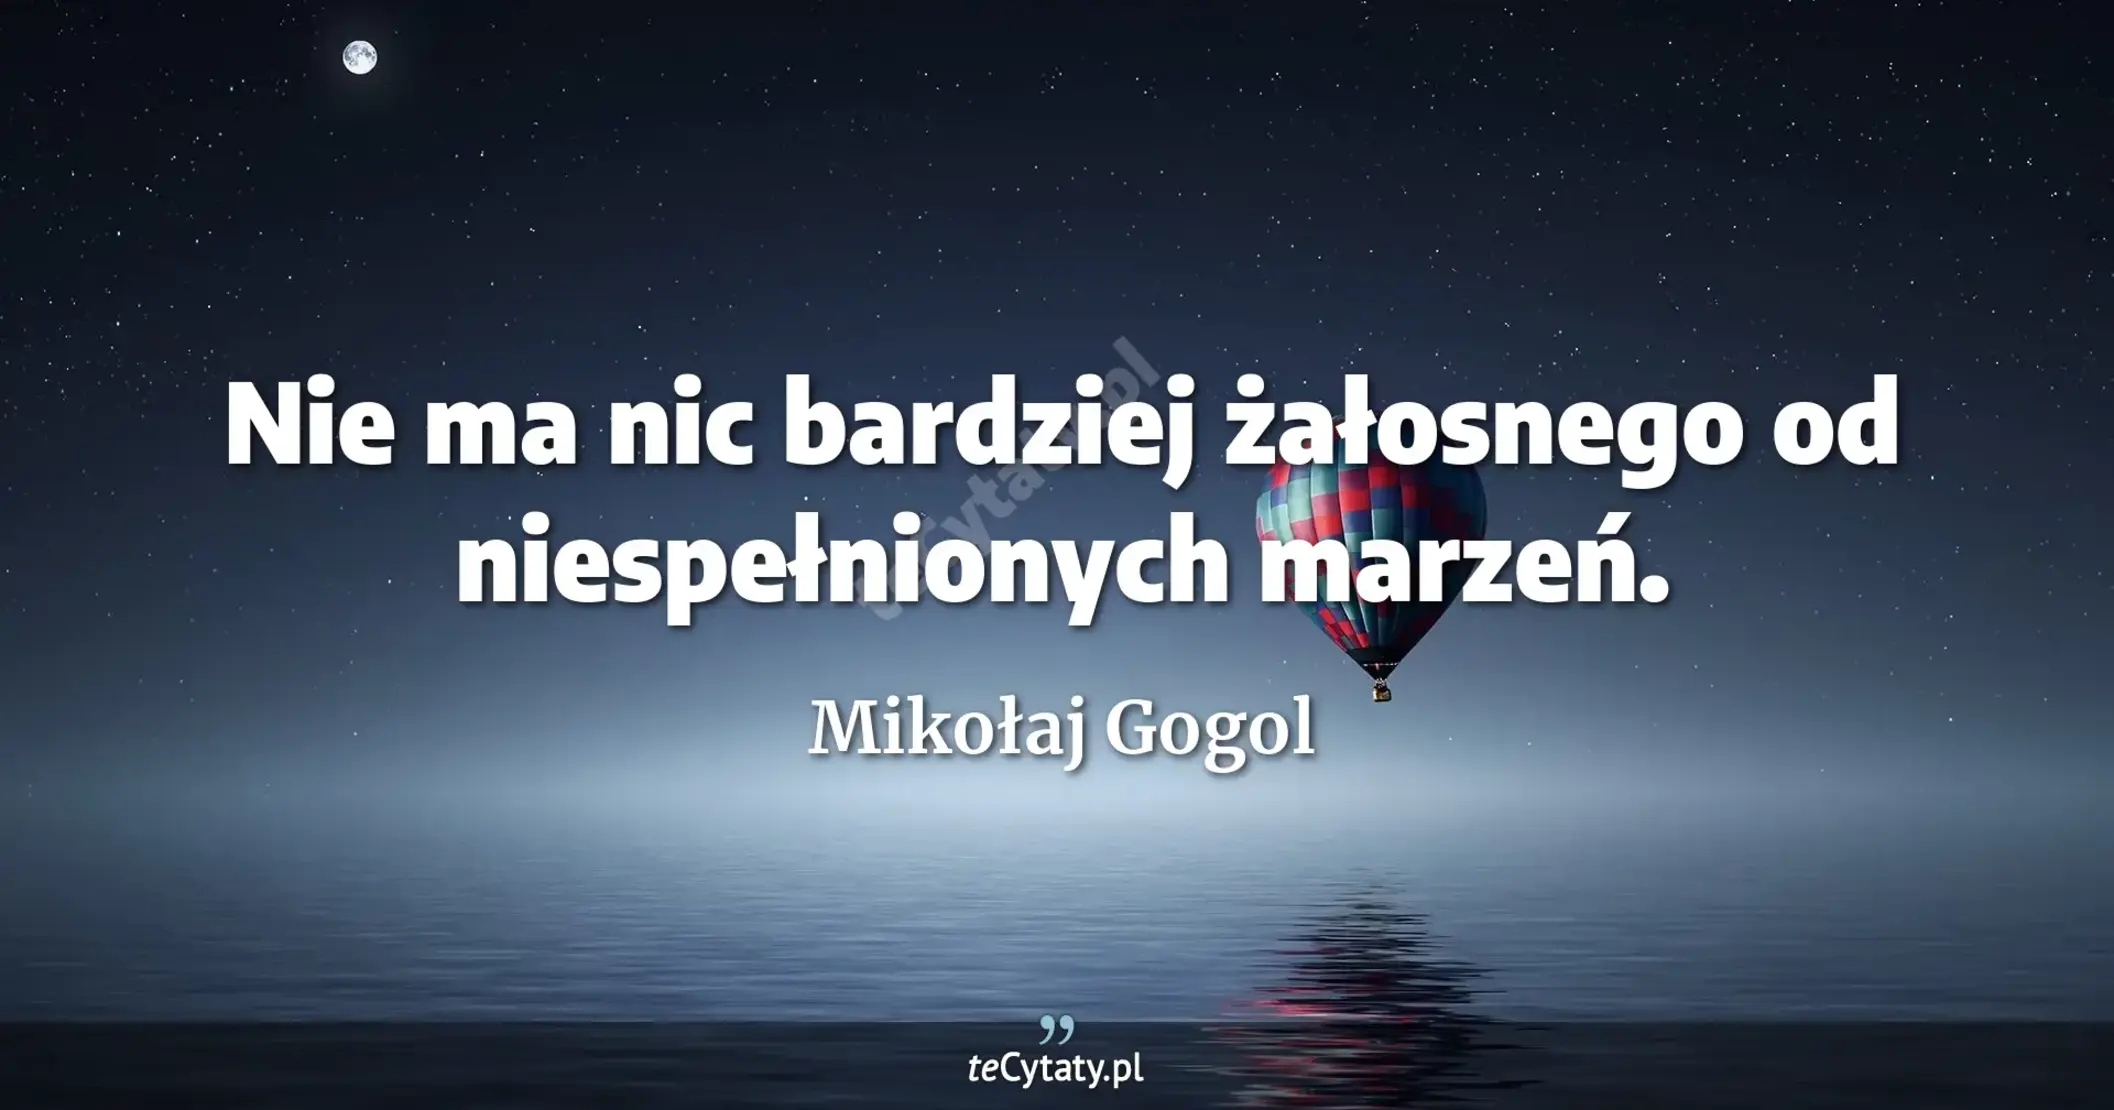 Nie ma nic bardziej żałosnego od niespełnionych marzeń. - Mikołaj Gogol